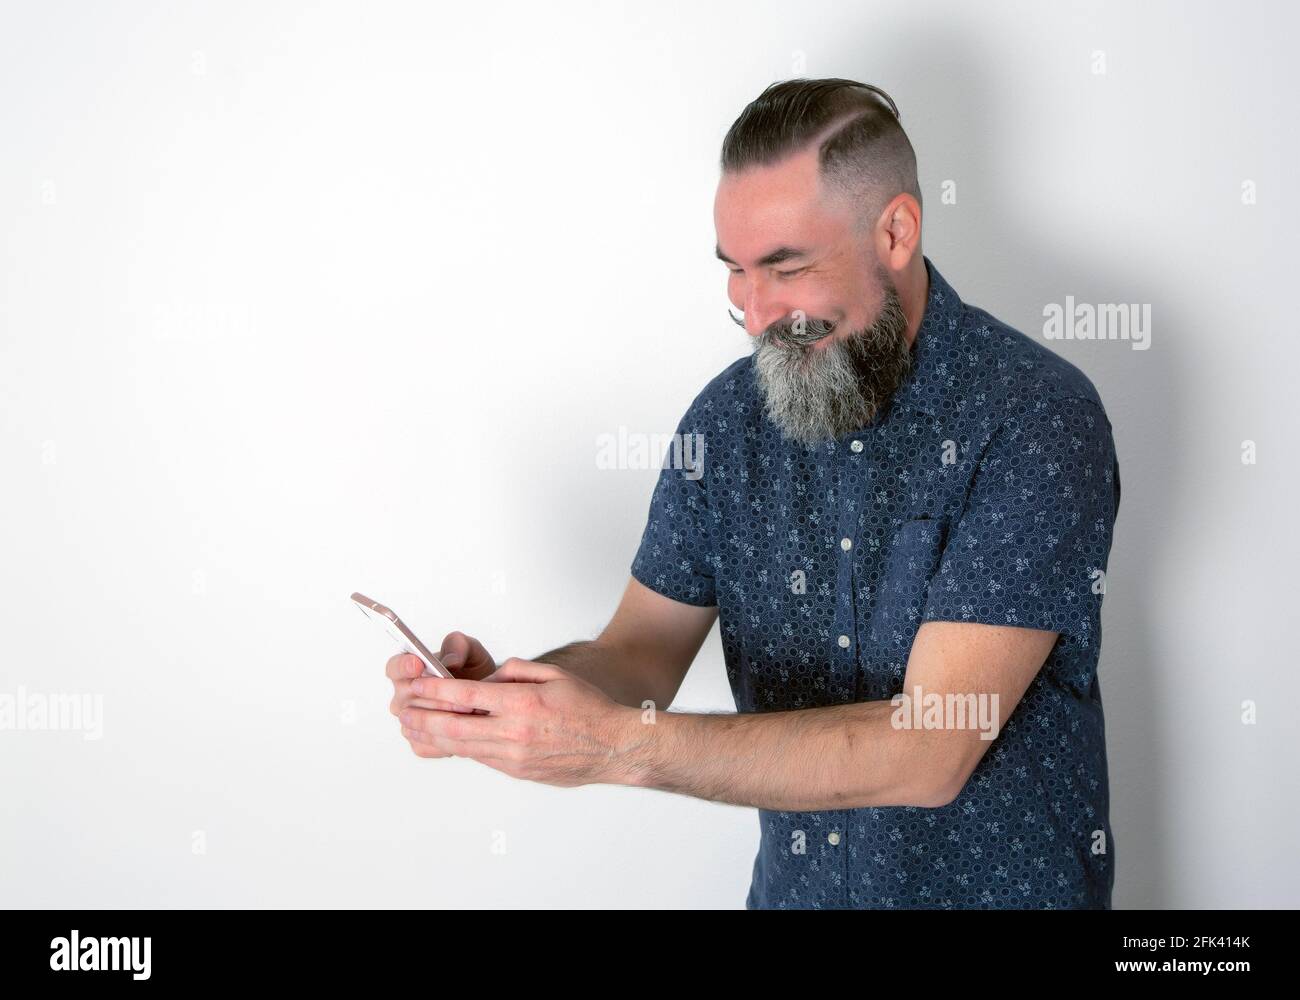 Caucásico de 40-45 años de edad con barba hipster mirando su móvil teléfono con una cara feliz y riendo Foto de stock